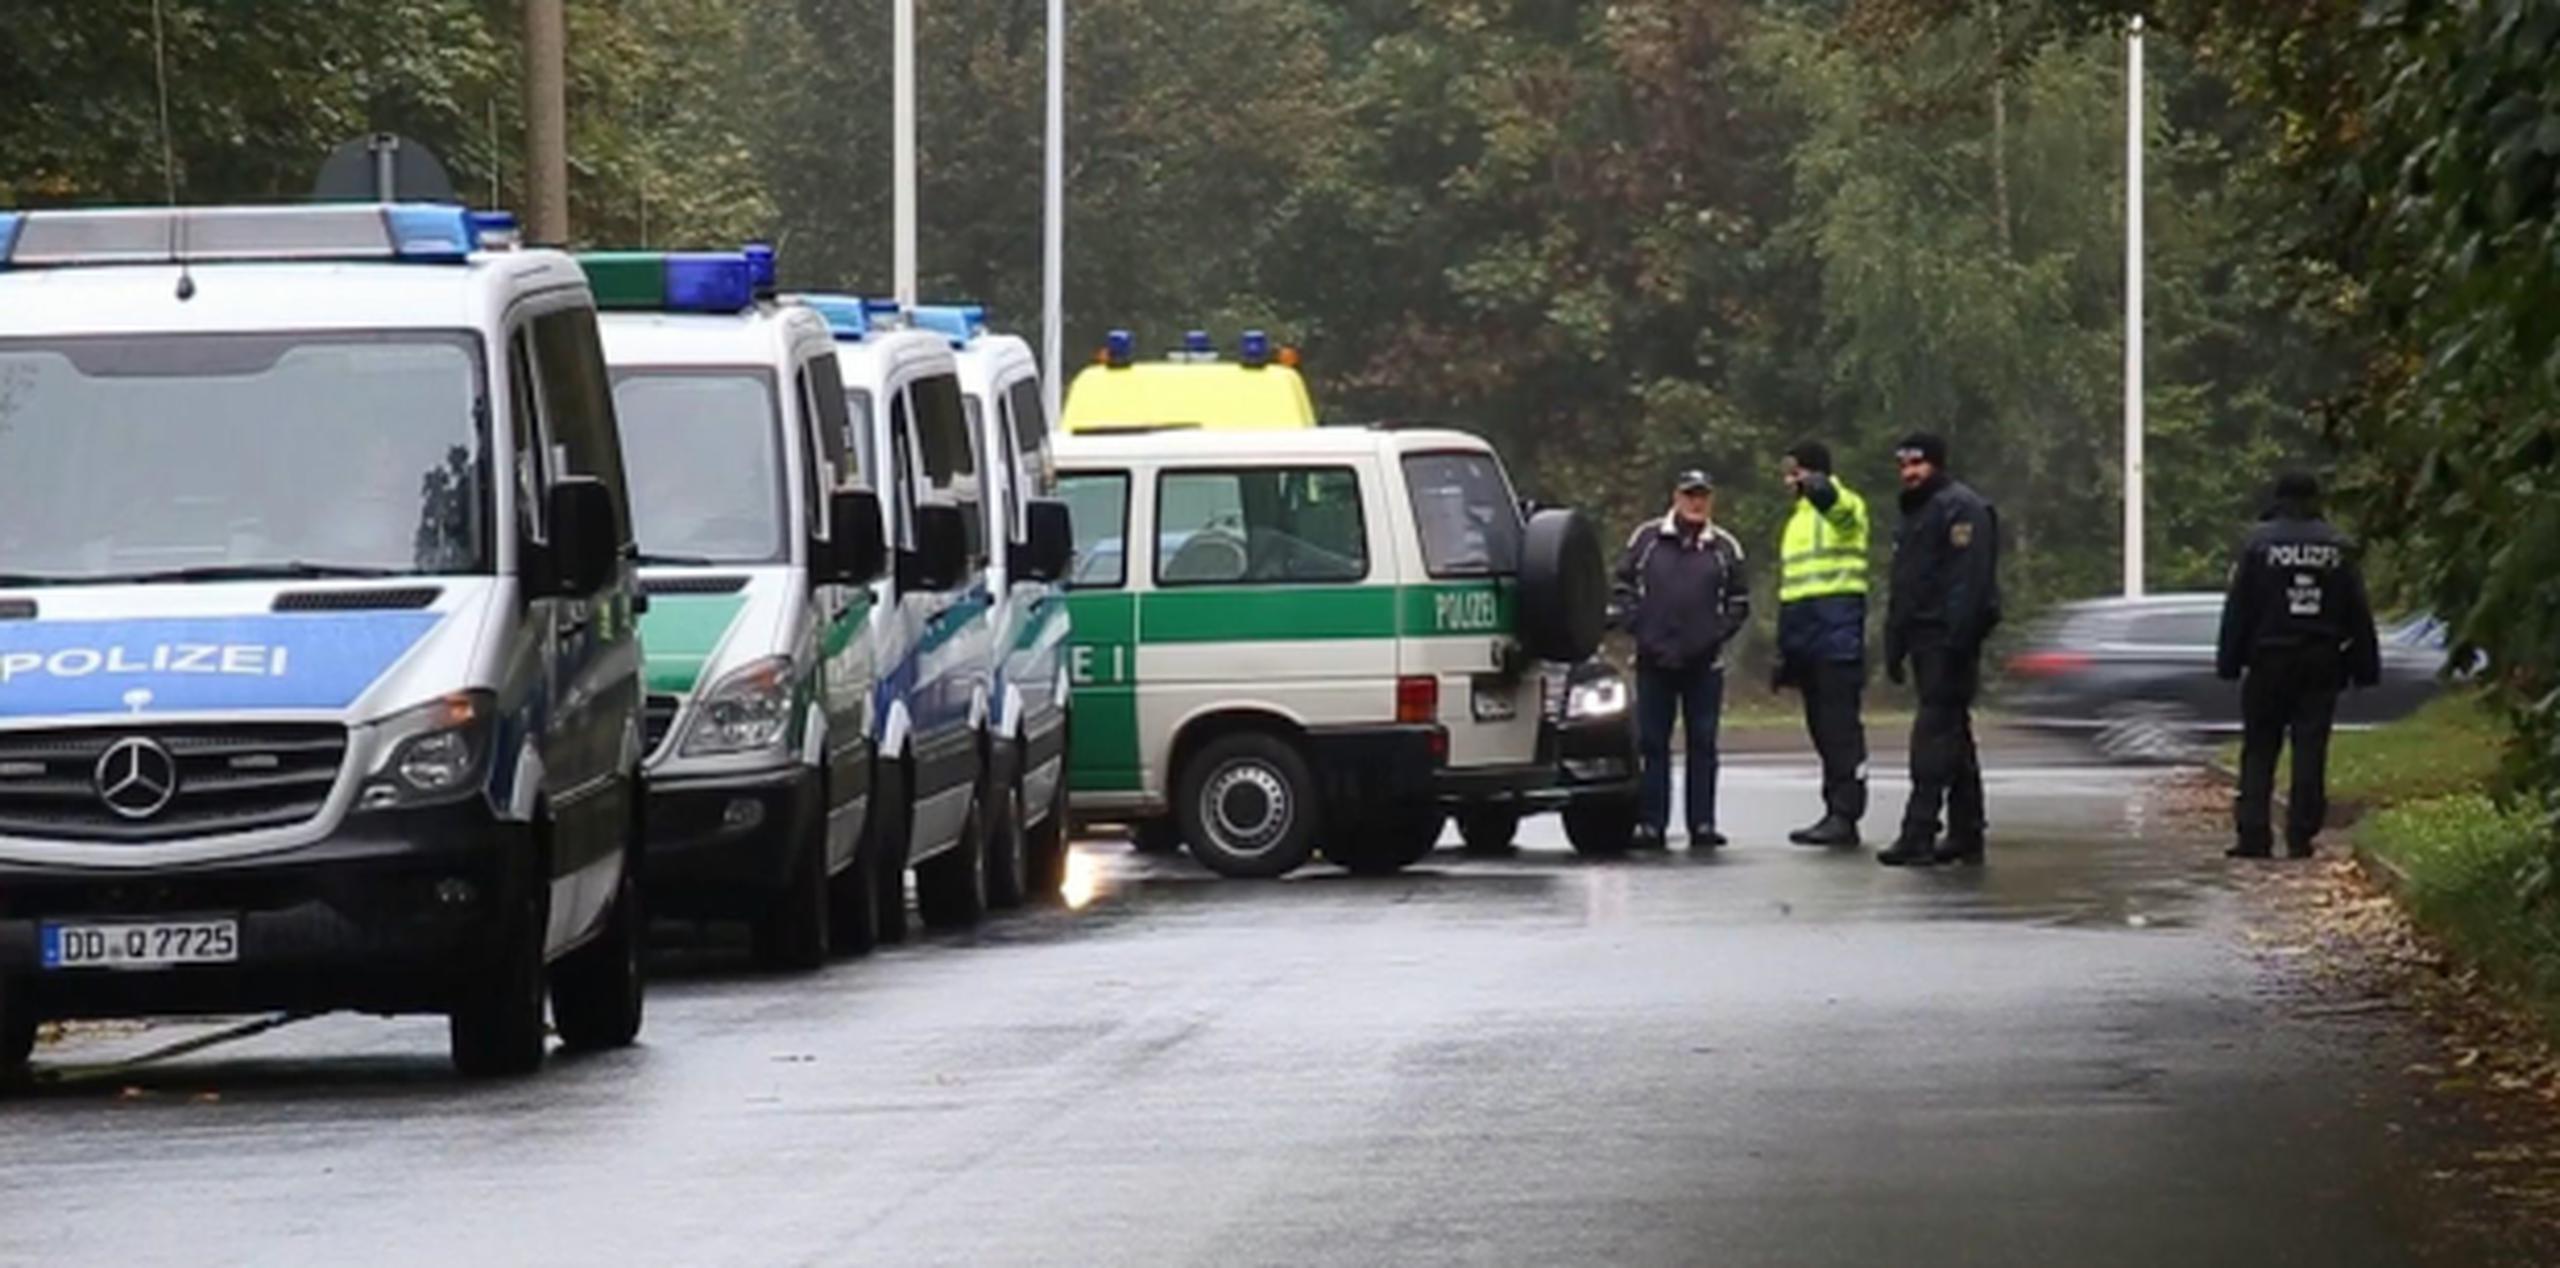 La policía de Sajonia desplegó un amplio operativo en la ciudad de Chemnitz para irrumpir en el apartamento del sospechoso. (Nonstop News via AP)
